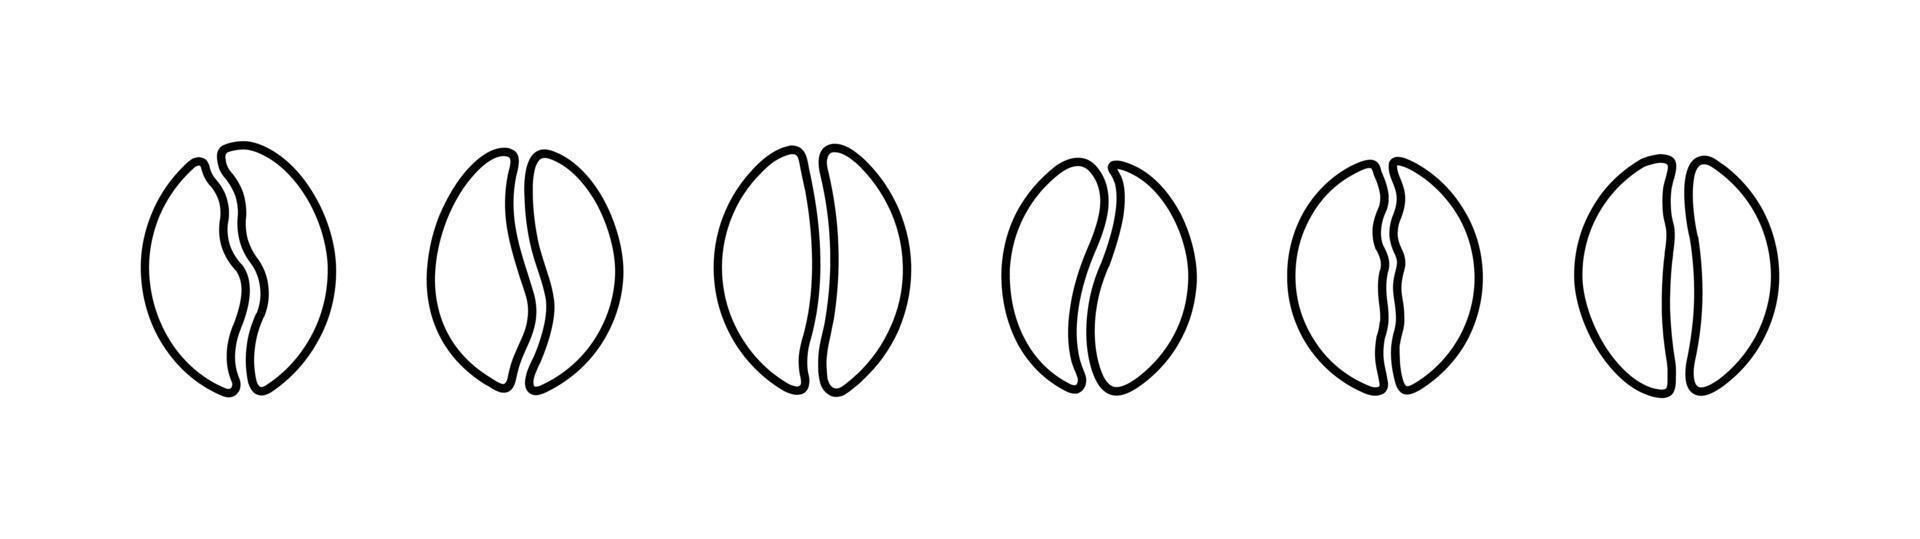 jeu d'icônes de grains de café. illustration vectorielle, illustration d'icône plate isolée de grains de café. vecteur